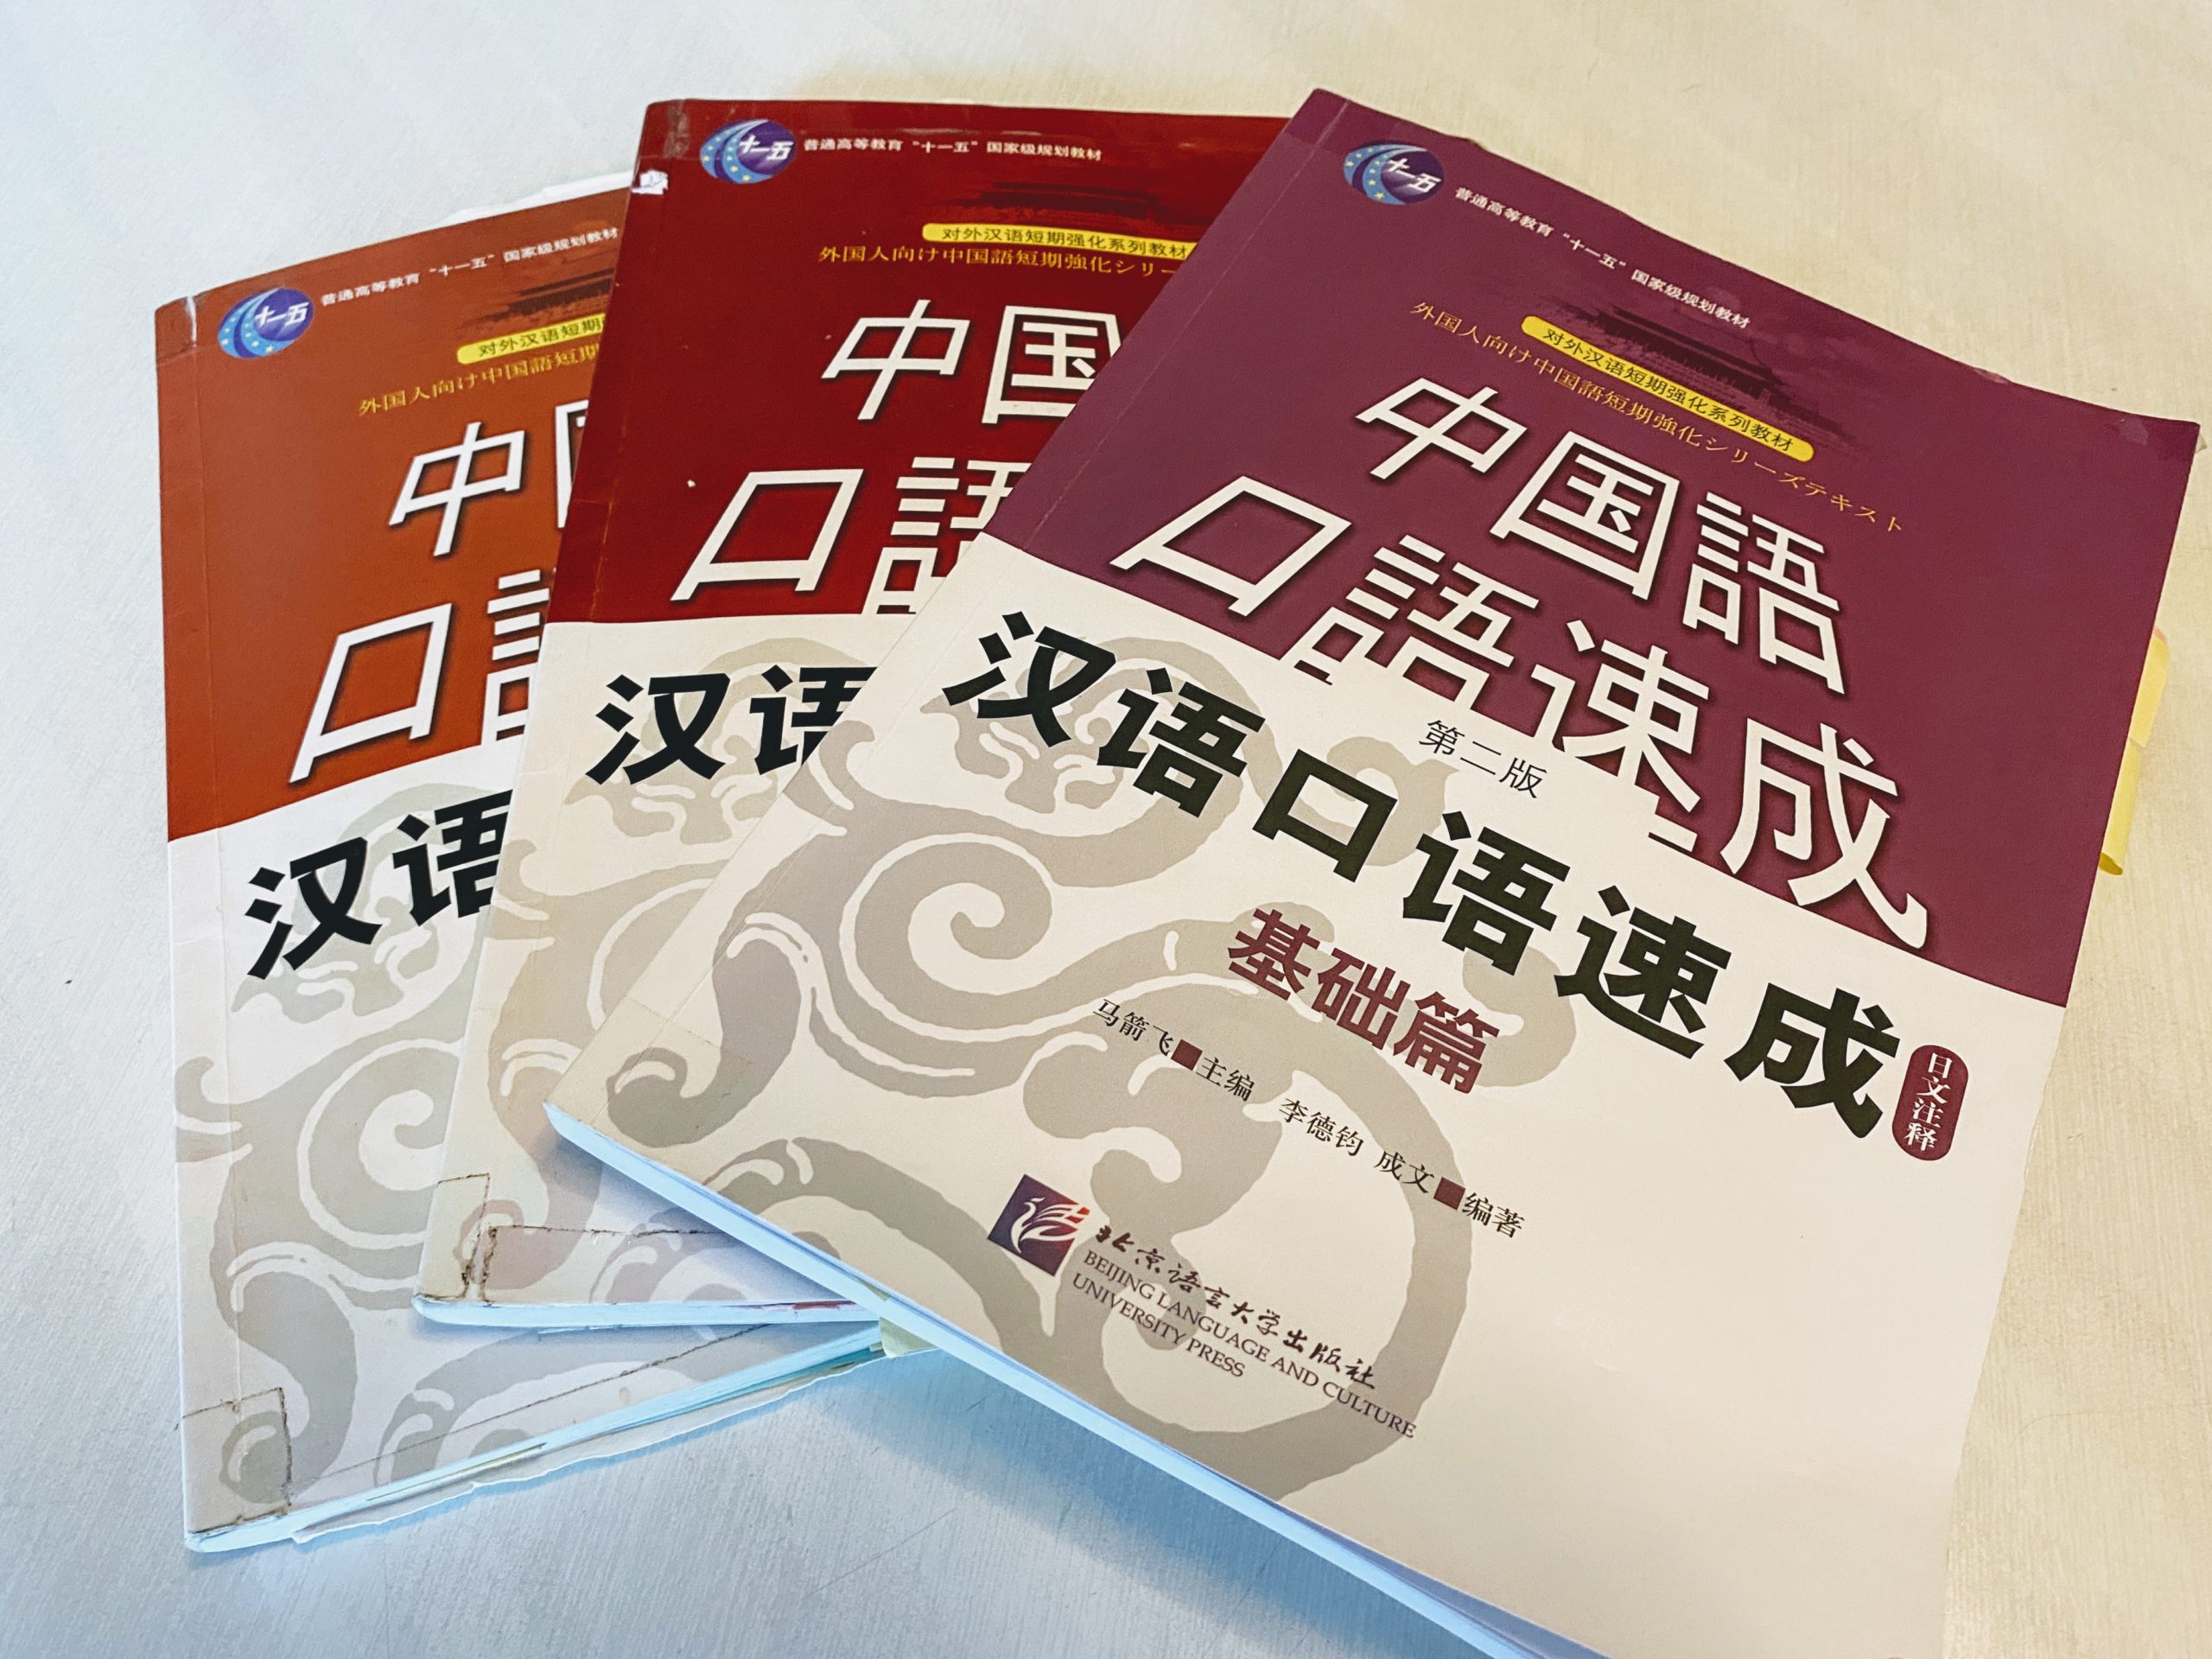 中国語 漢語口語 北京大学出版社